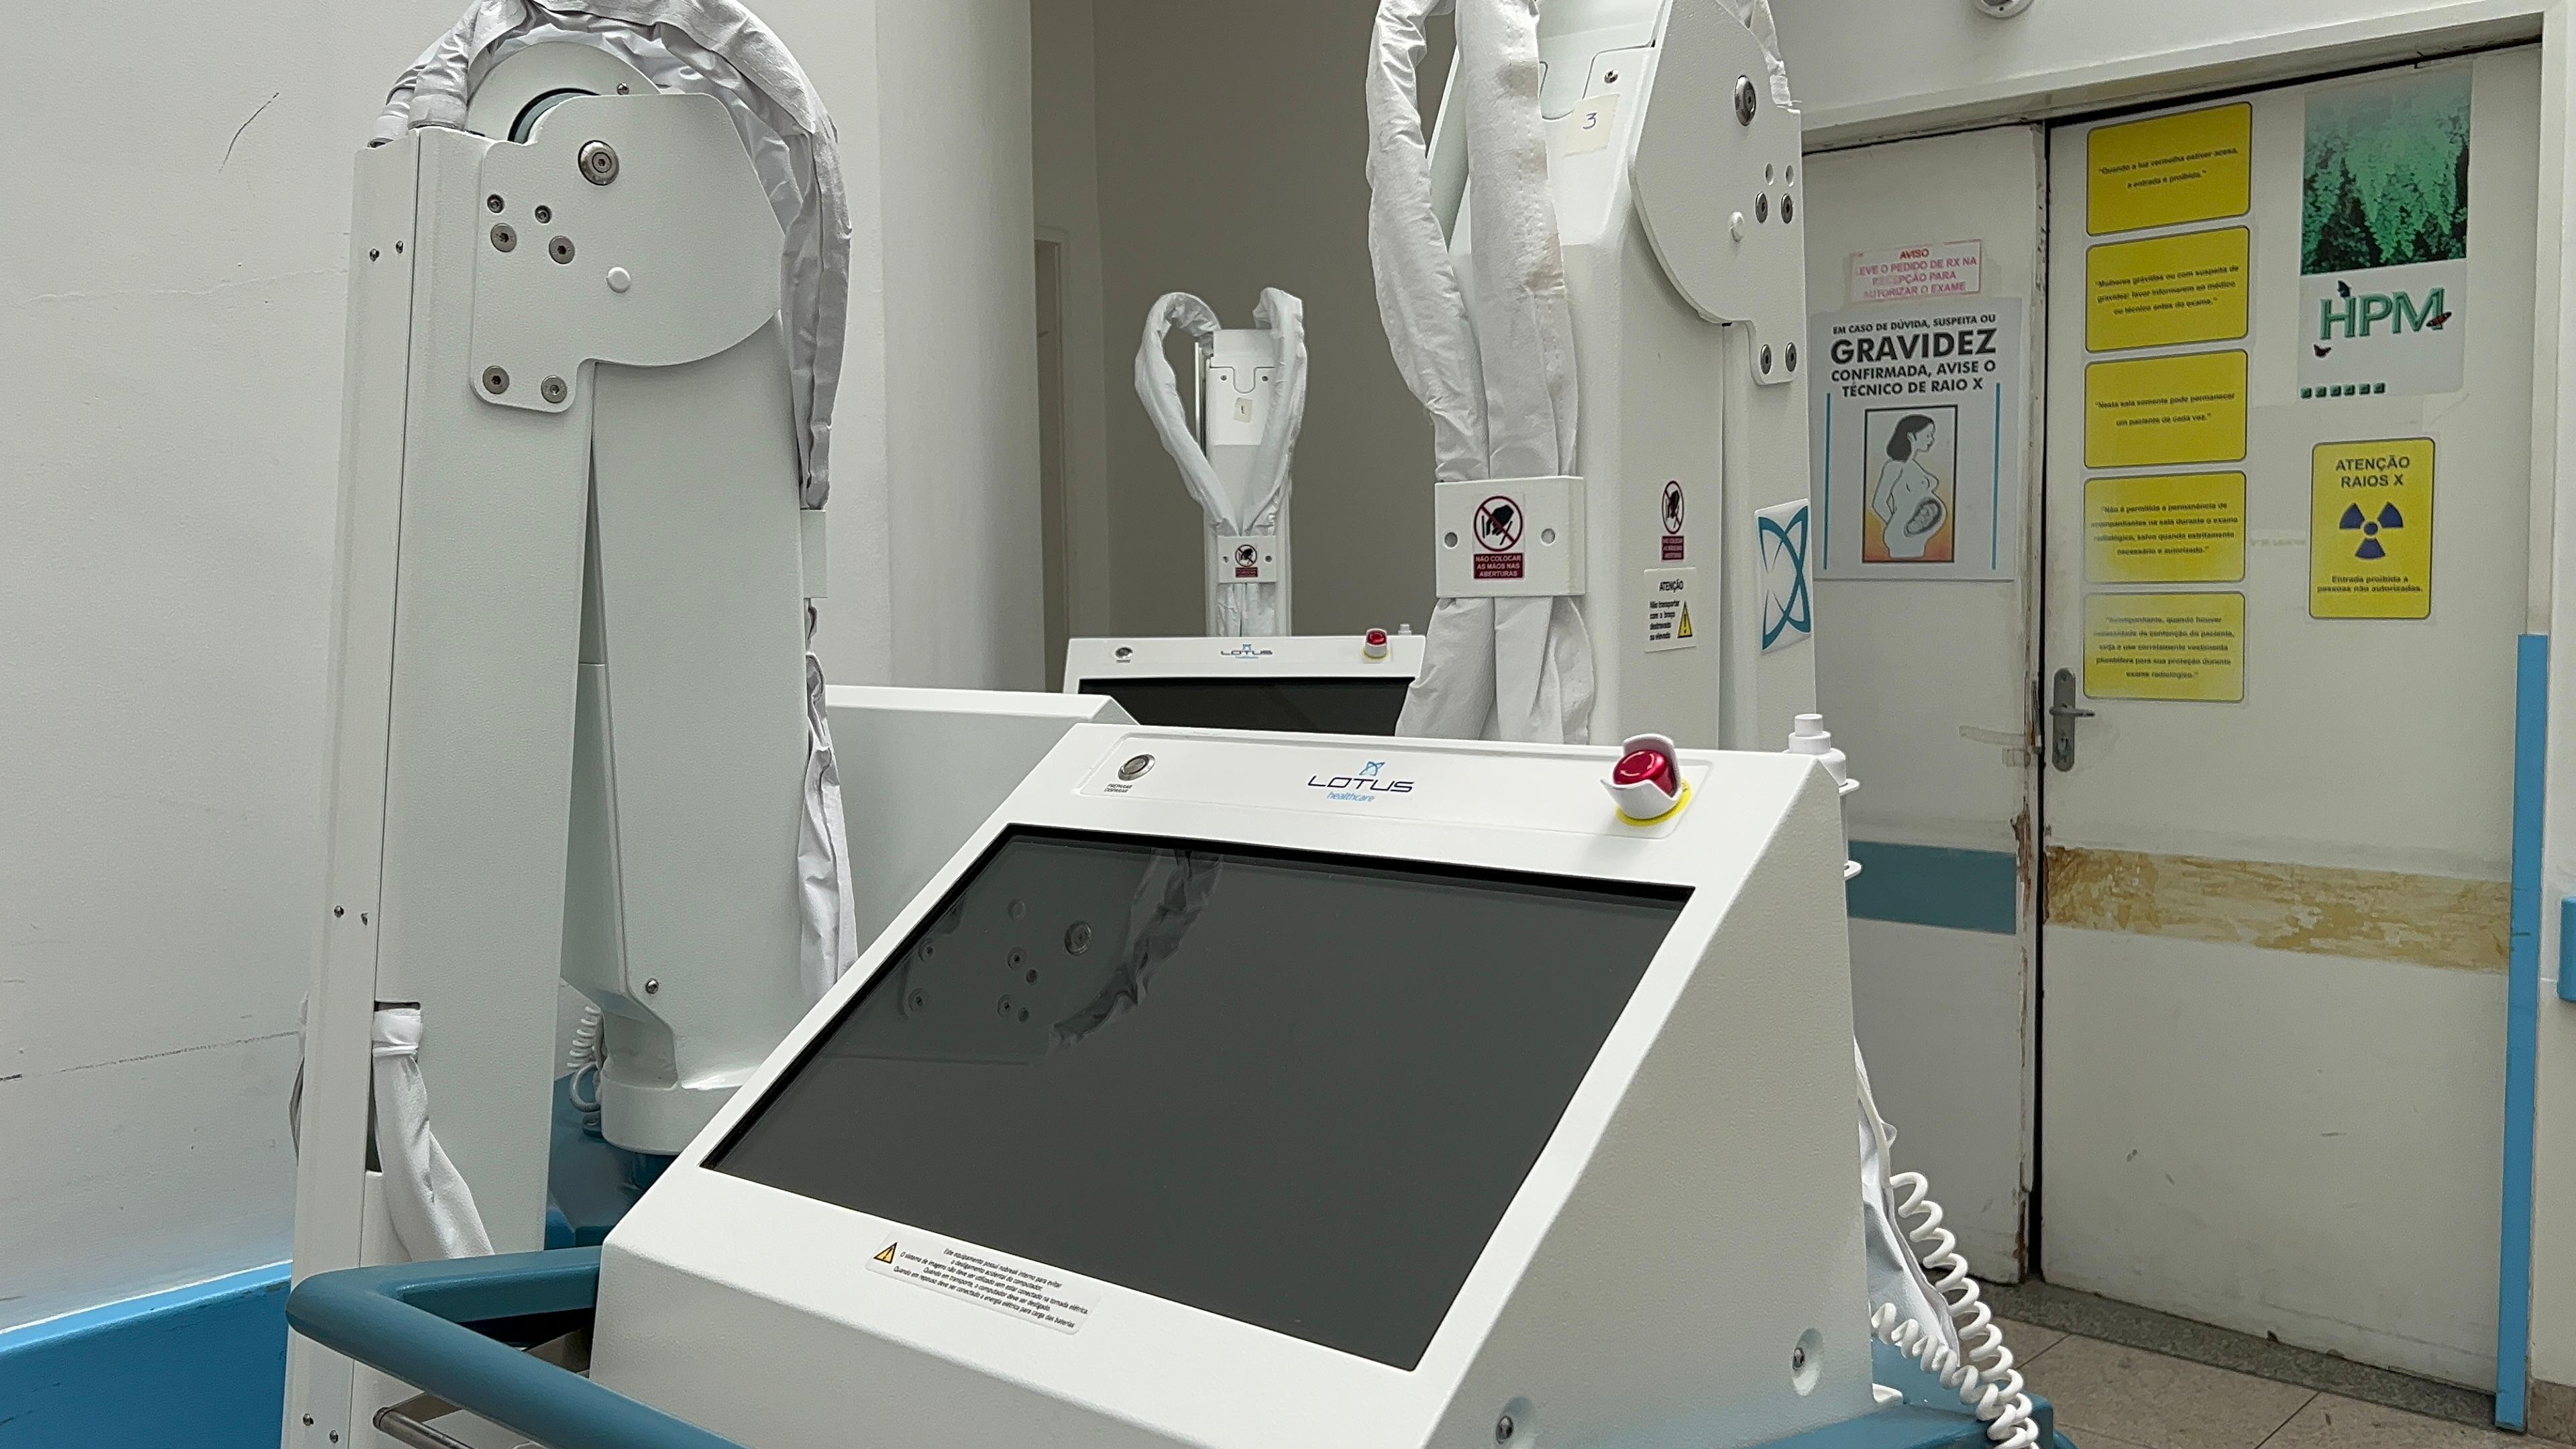 O Raio-X digital portátil representa um avanço tecnológico importante na área da radiologia